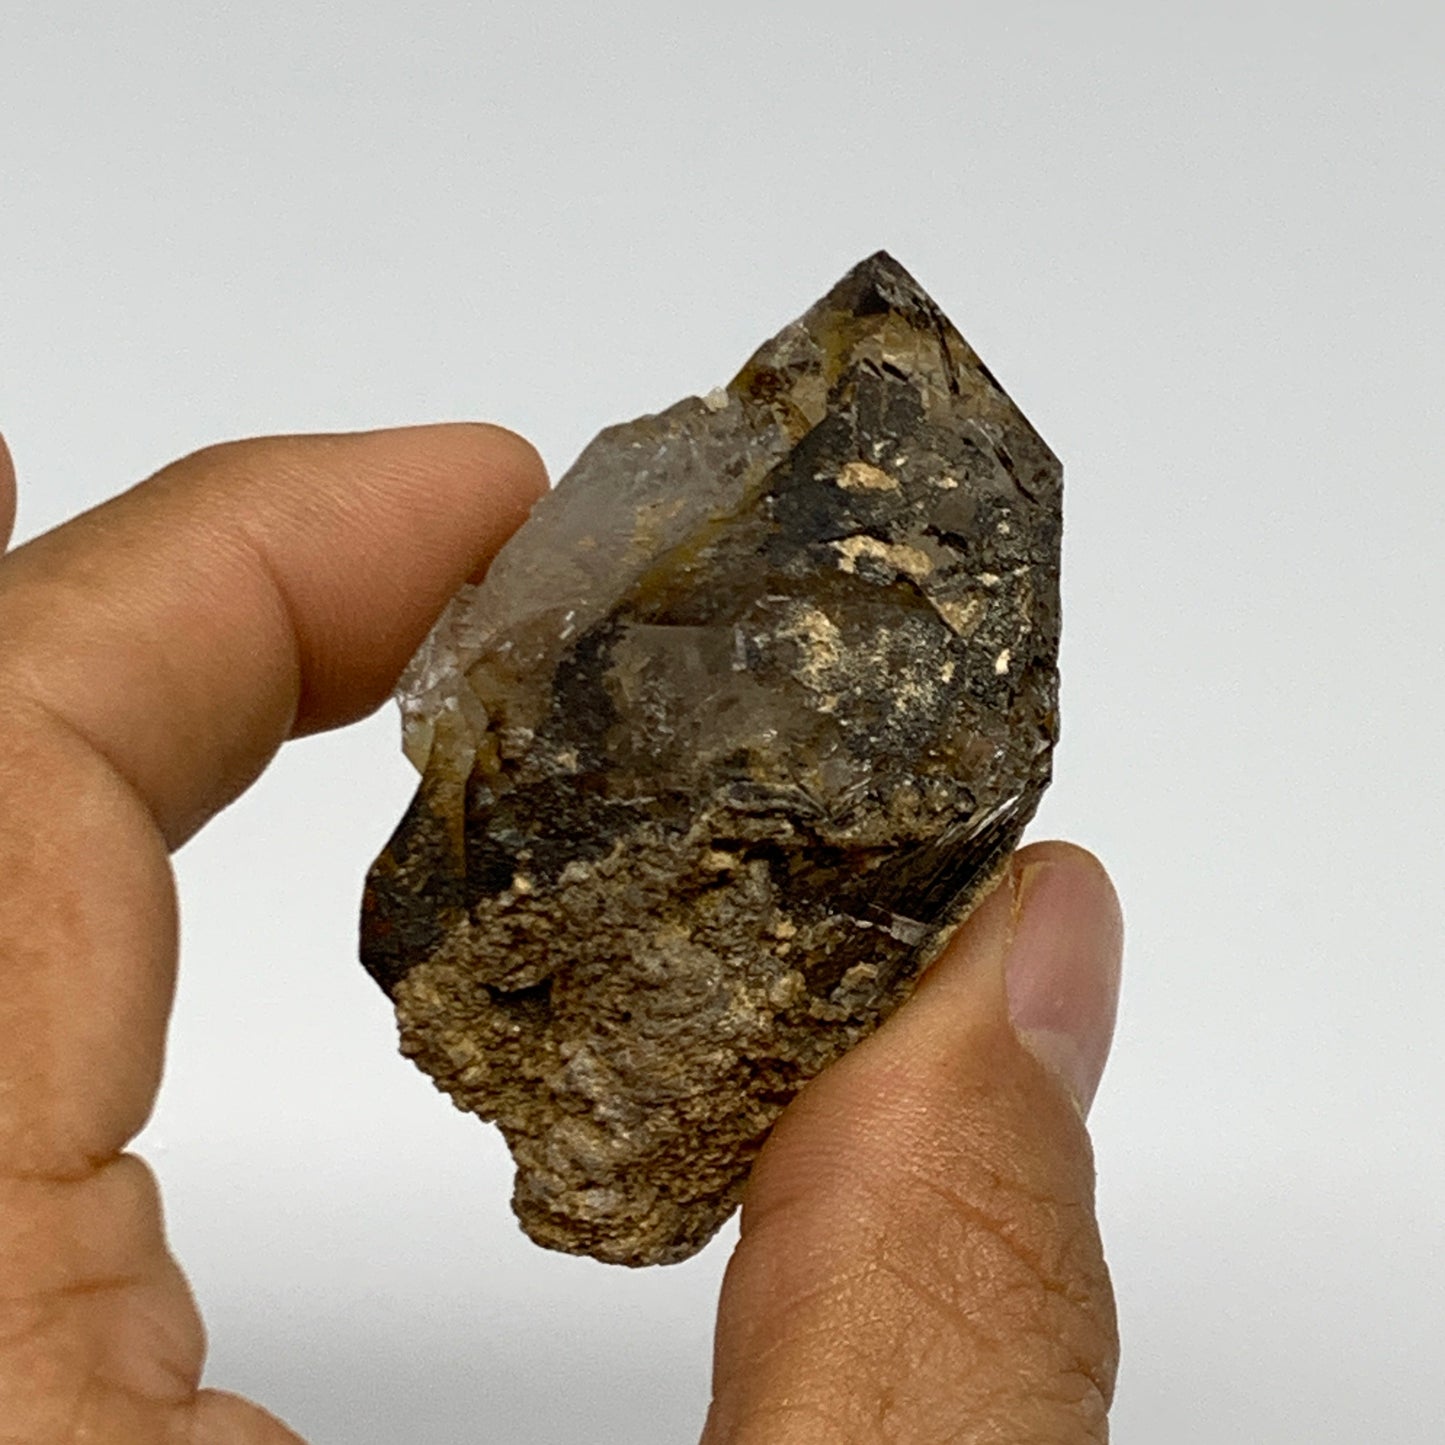 65.9g, 2.2"x1.6"x1.3", Natural Window Quartz Crystal Terminated @Pakistan,B27767